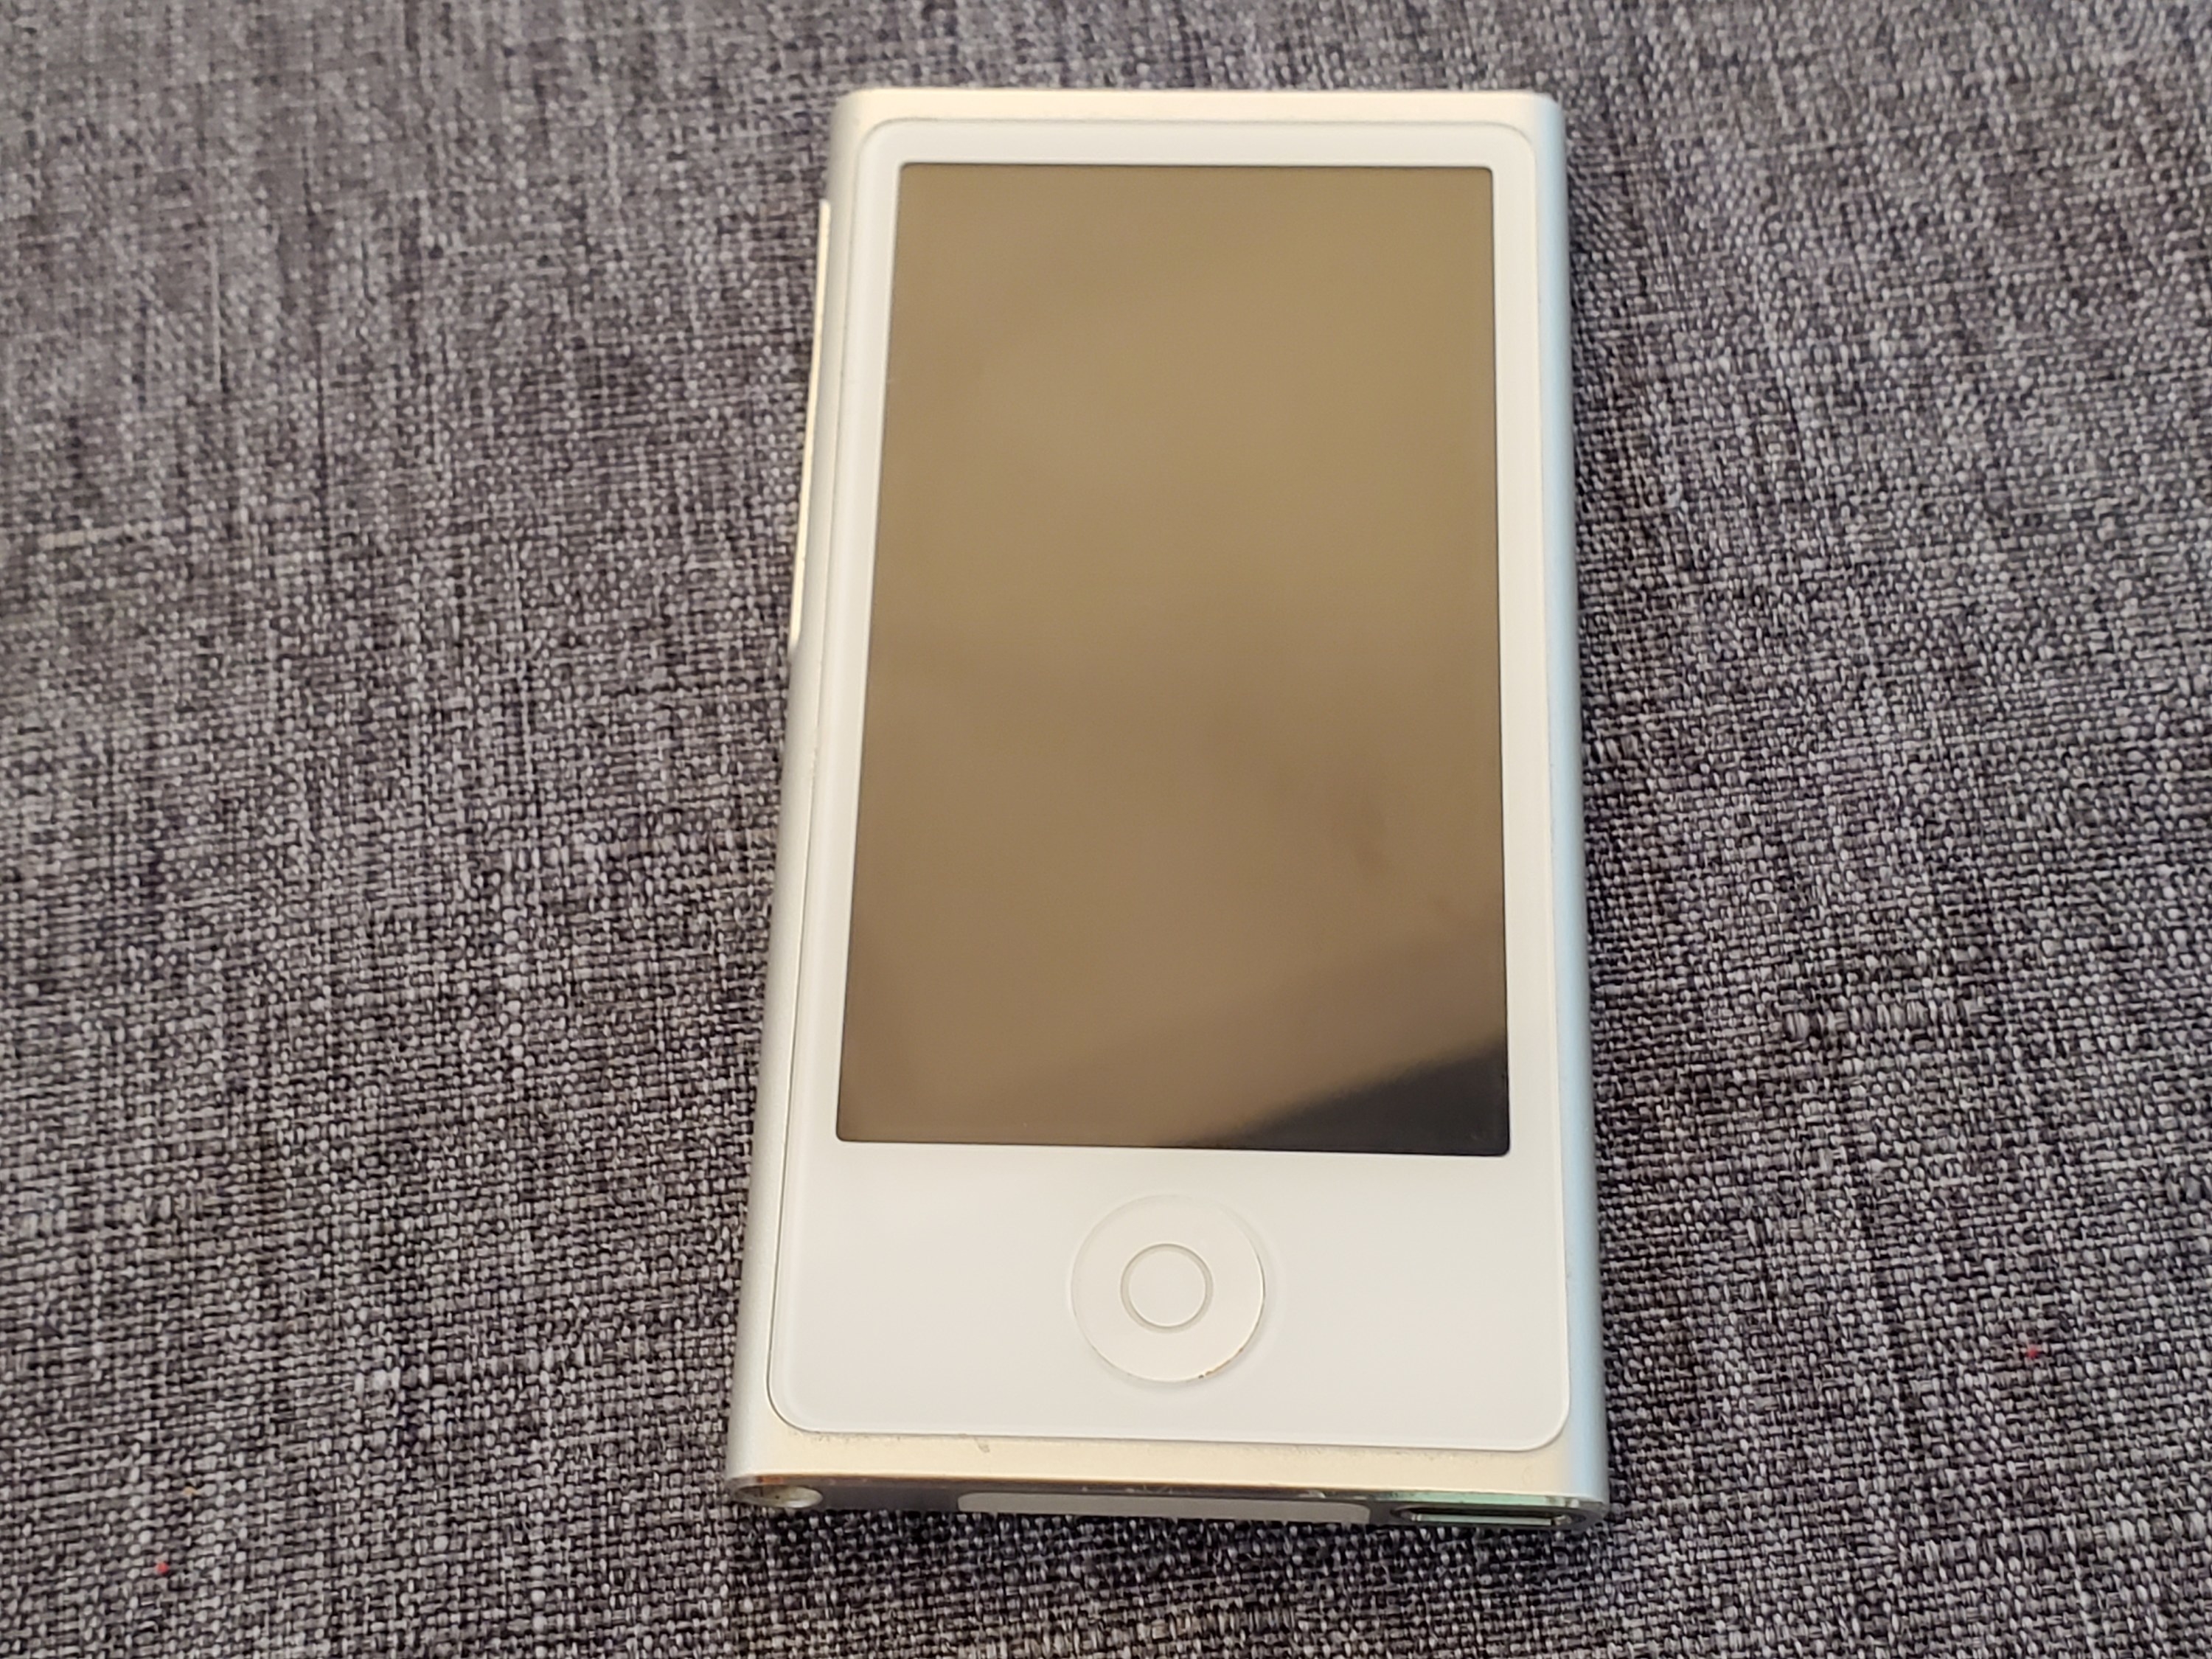 An older iPod